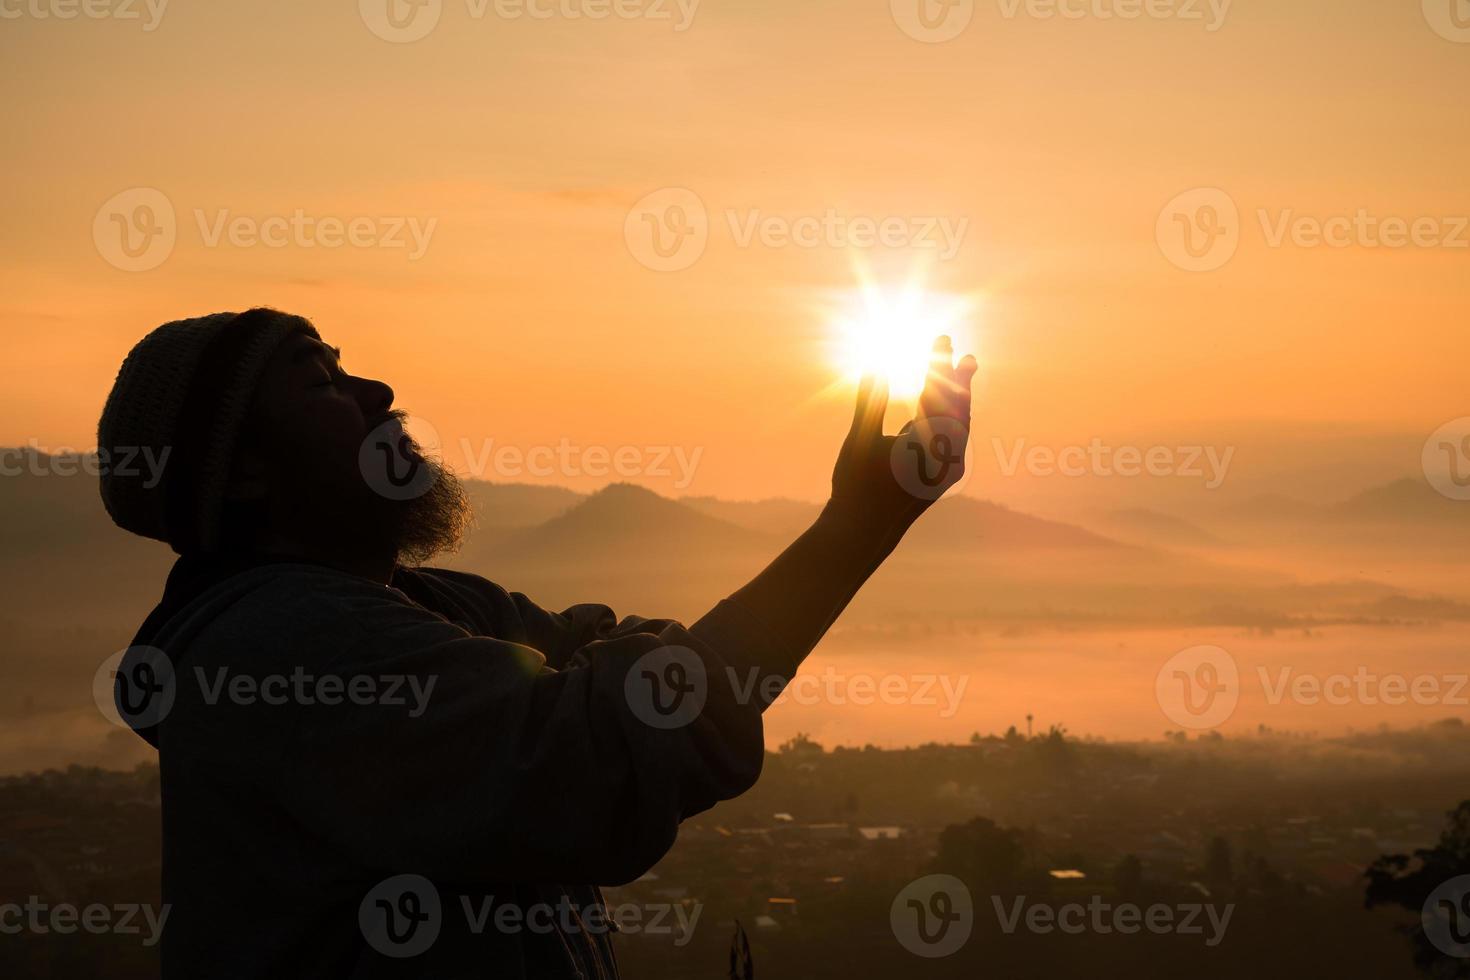 tro av kristen begrepp andlig bön händer över solsken med suddig skön soluppgång eller solnedgång bakgrund. kristna vem ha tro, tro i Gud morgon- bön. foto